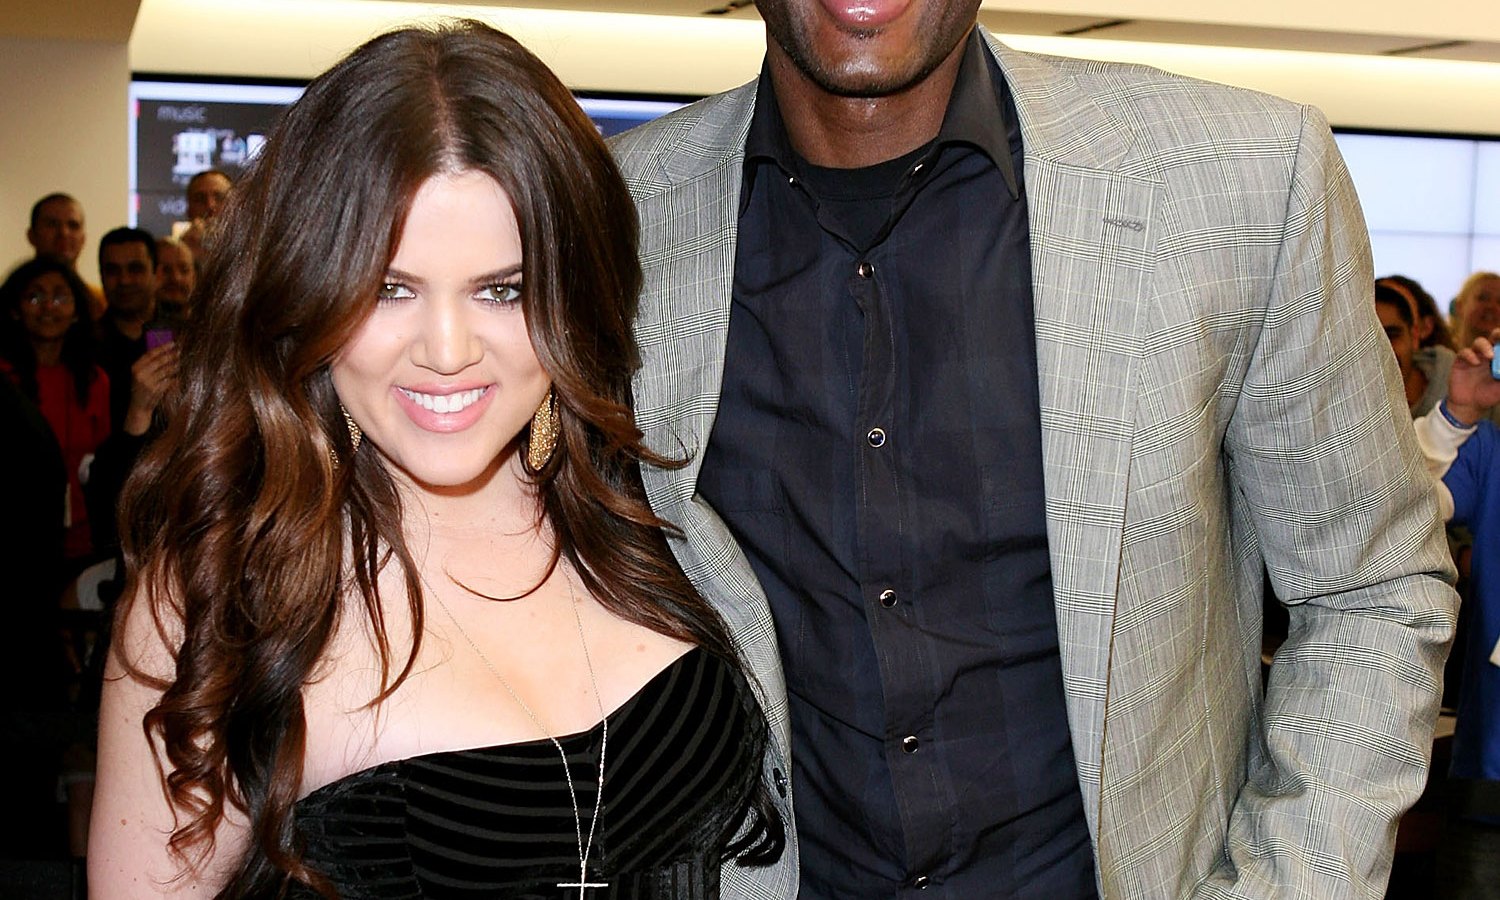 Khloe Kardashian and Lamar Odom on March 24, 2011